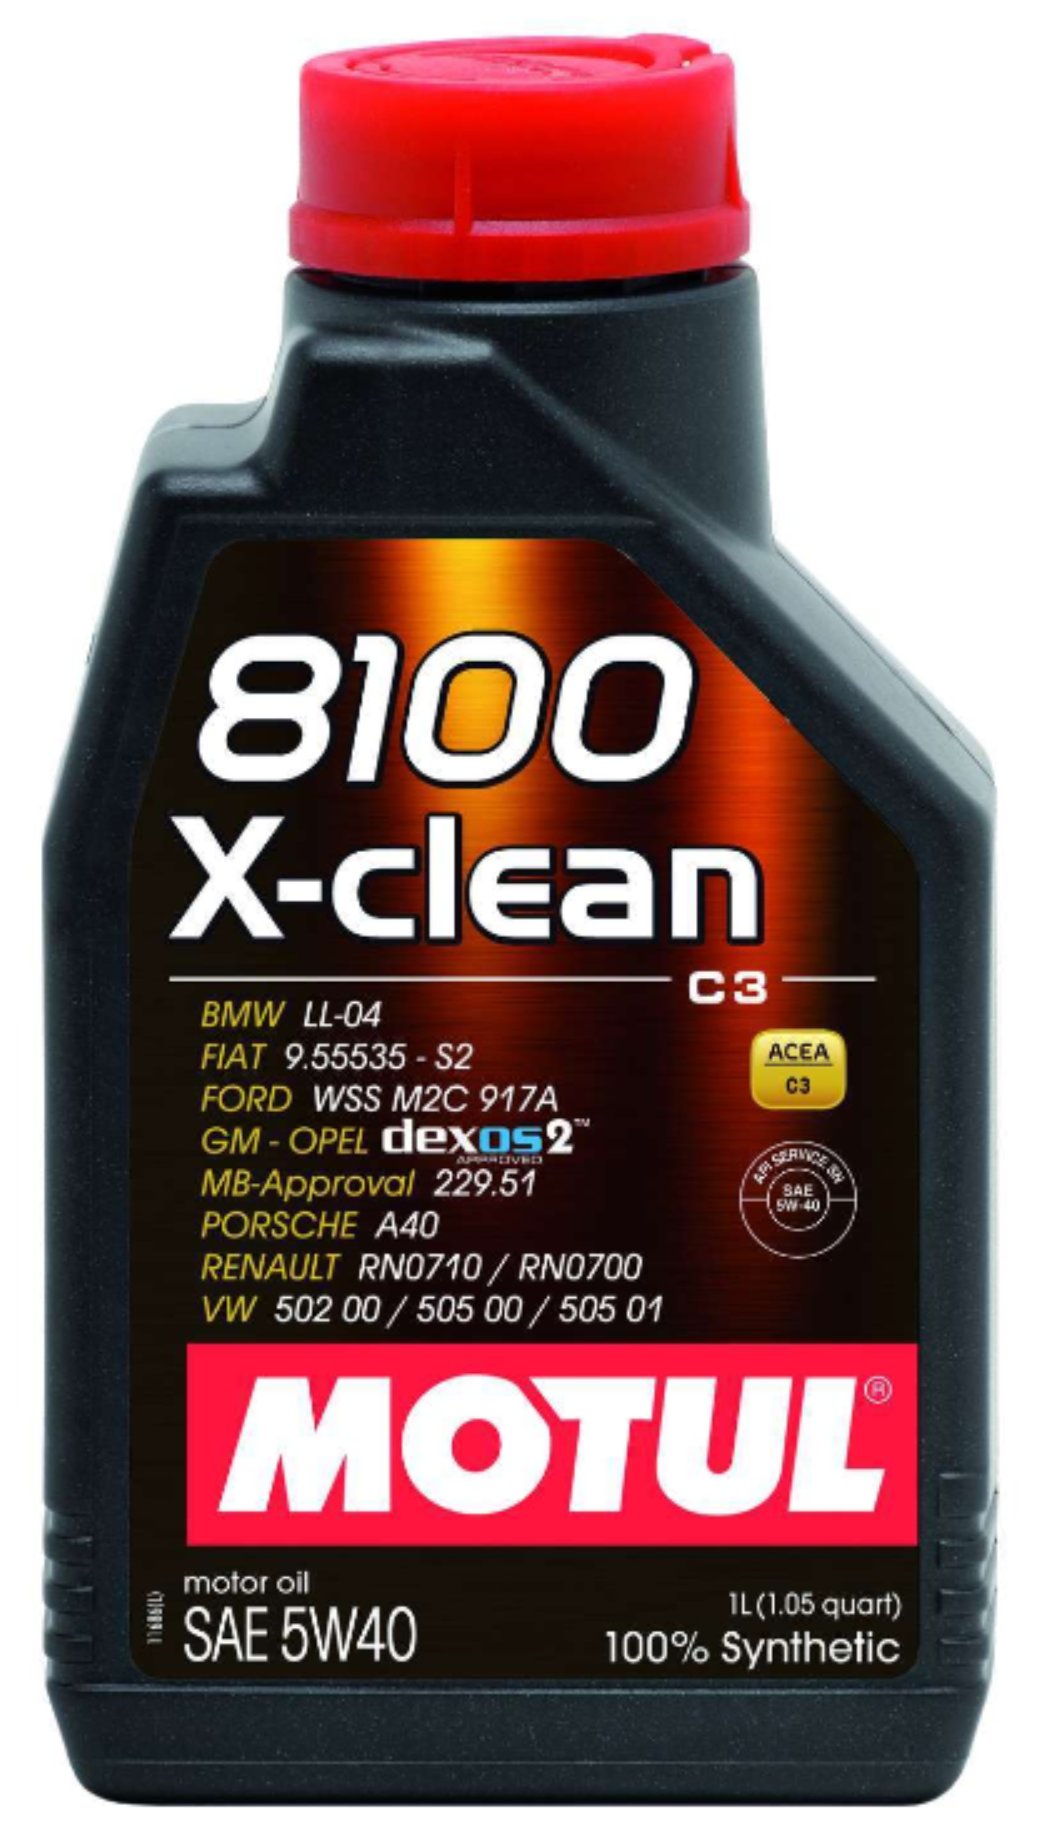 Motul 8100 X-clean 5W-40 Synthetic Motor Oil - 1 Liter